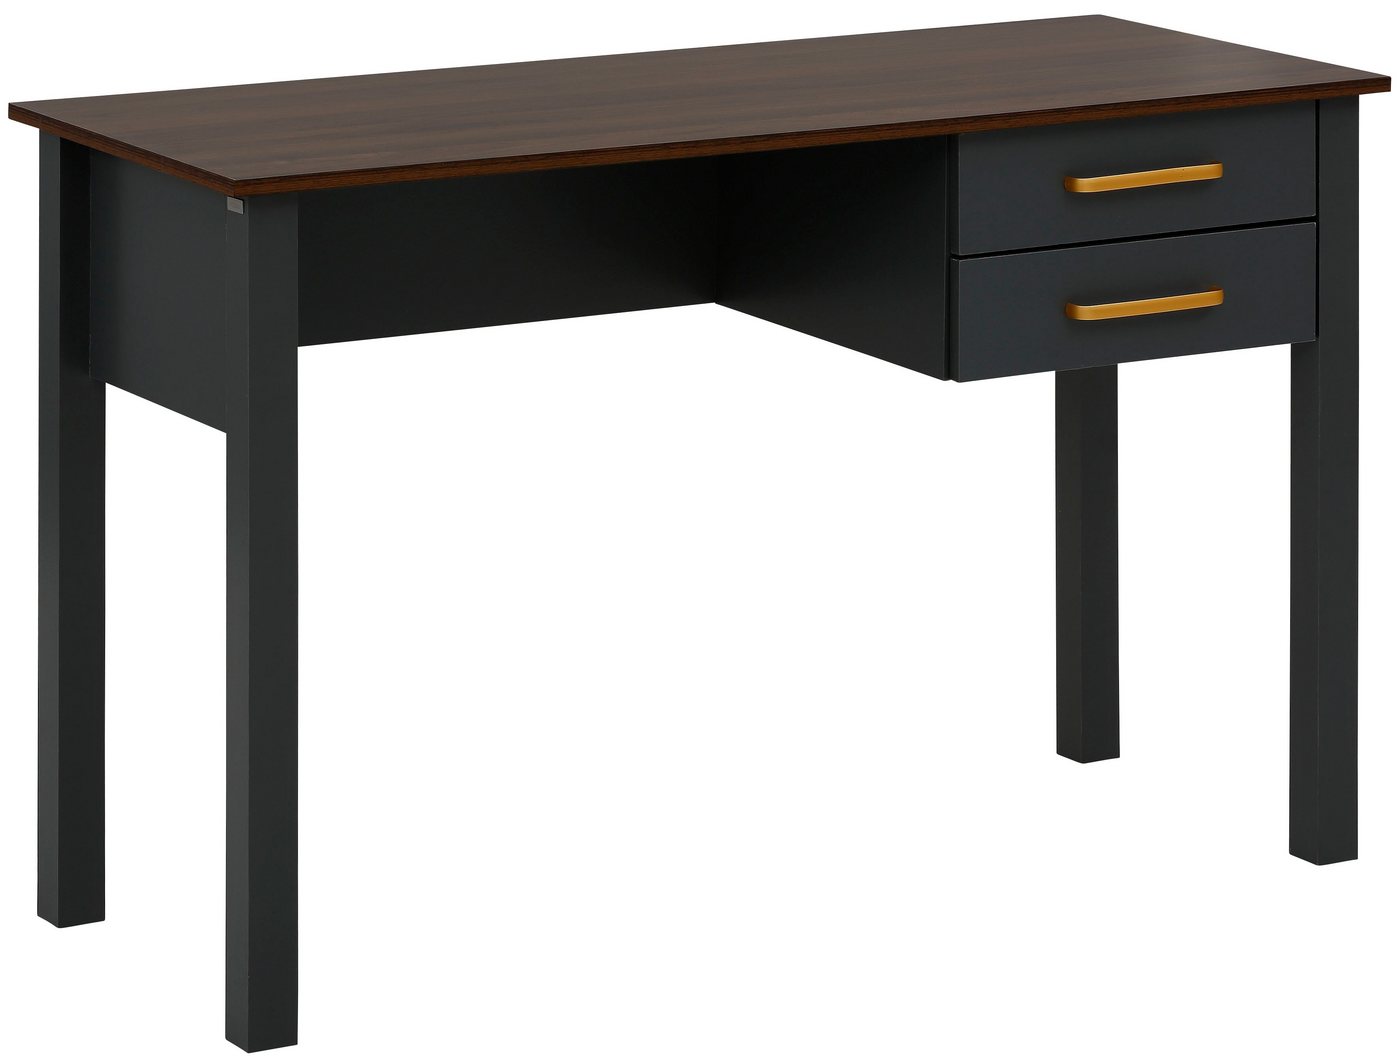 Home affaire Schreibtisch »Martinau«, Tischplatte in einer edlen Holzoptik, mit 2 Schubladen, mit goldfarbenen Griffen aus Metall, Höhe 76,5 cm-kaufen